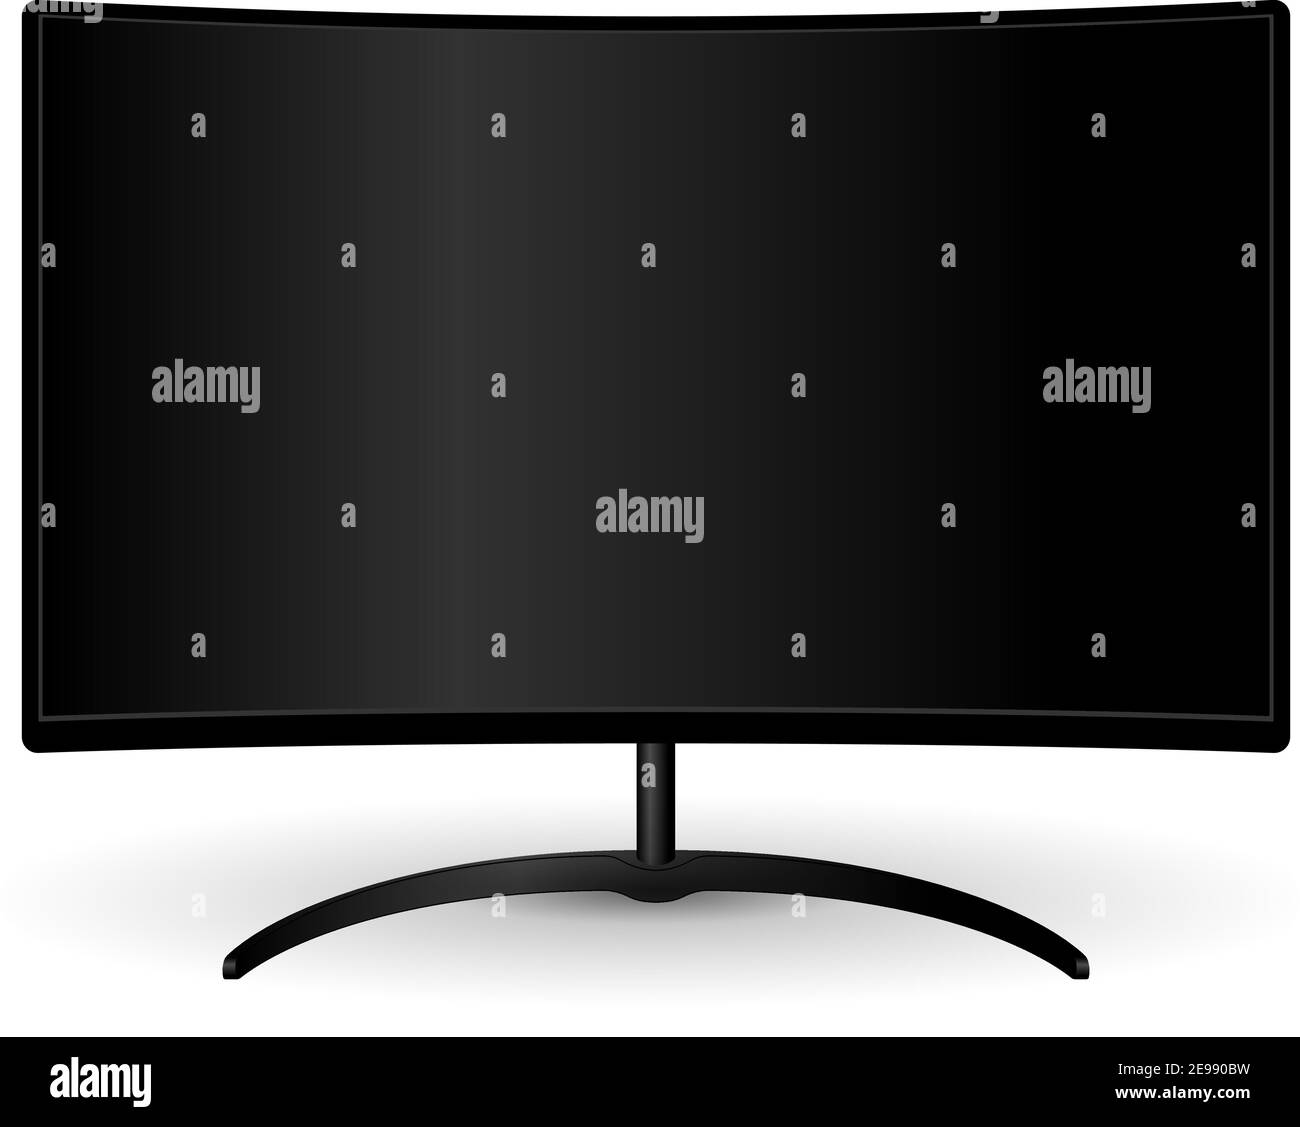 Monitor TV Full hd nero con ampio schermo curvo. Dispositivo di visualizzazione a LED elettronico per presentazioni Web. Illustrazione vettoriale HQ per la pubblicità. Blan Illustrazione Vettoriale